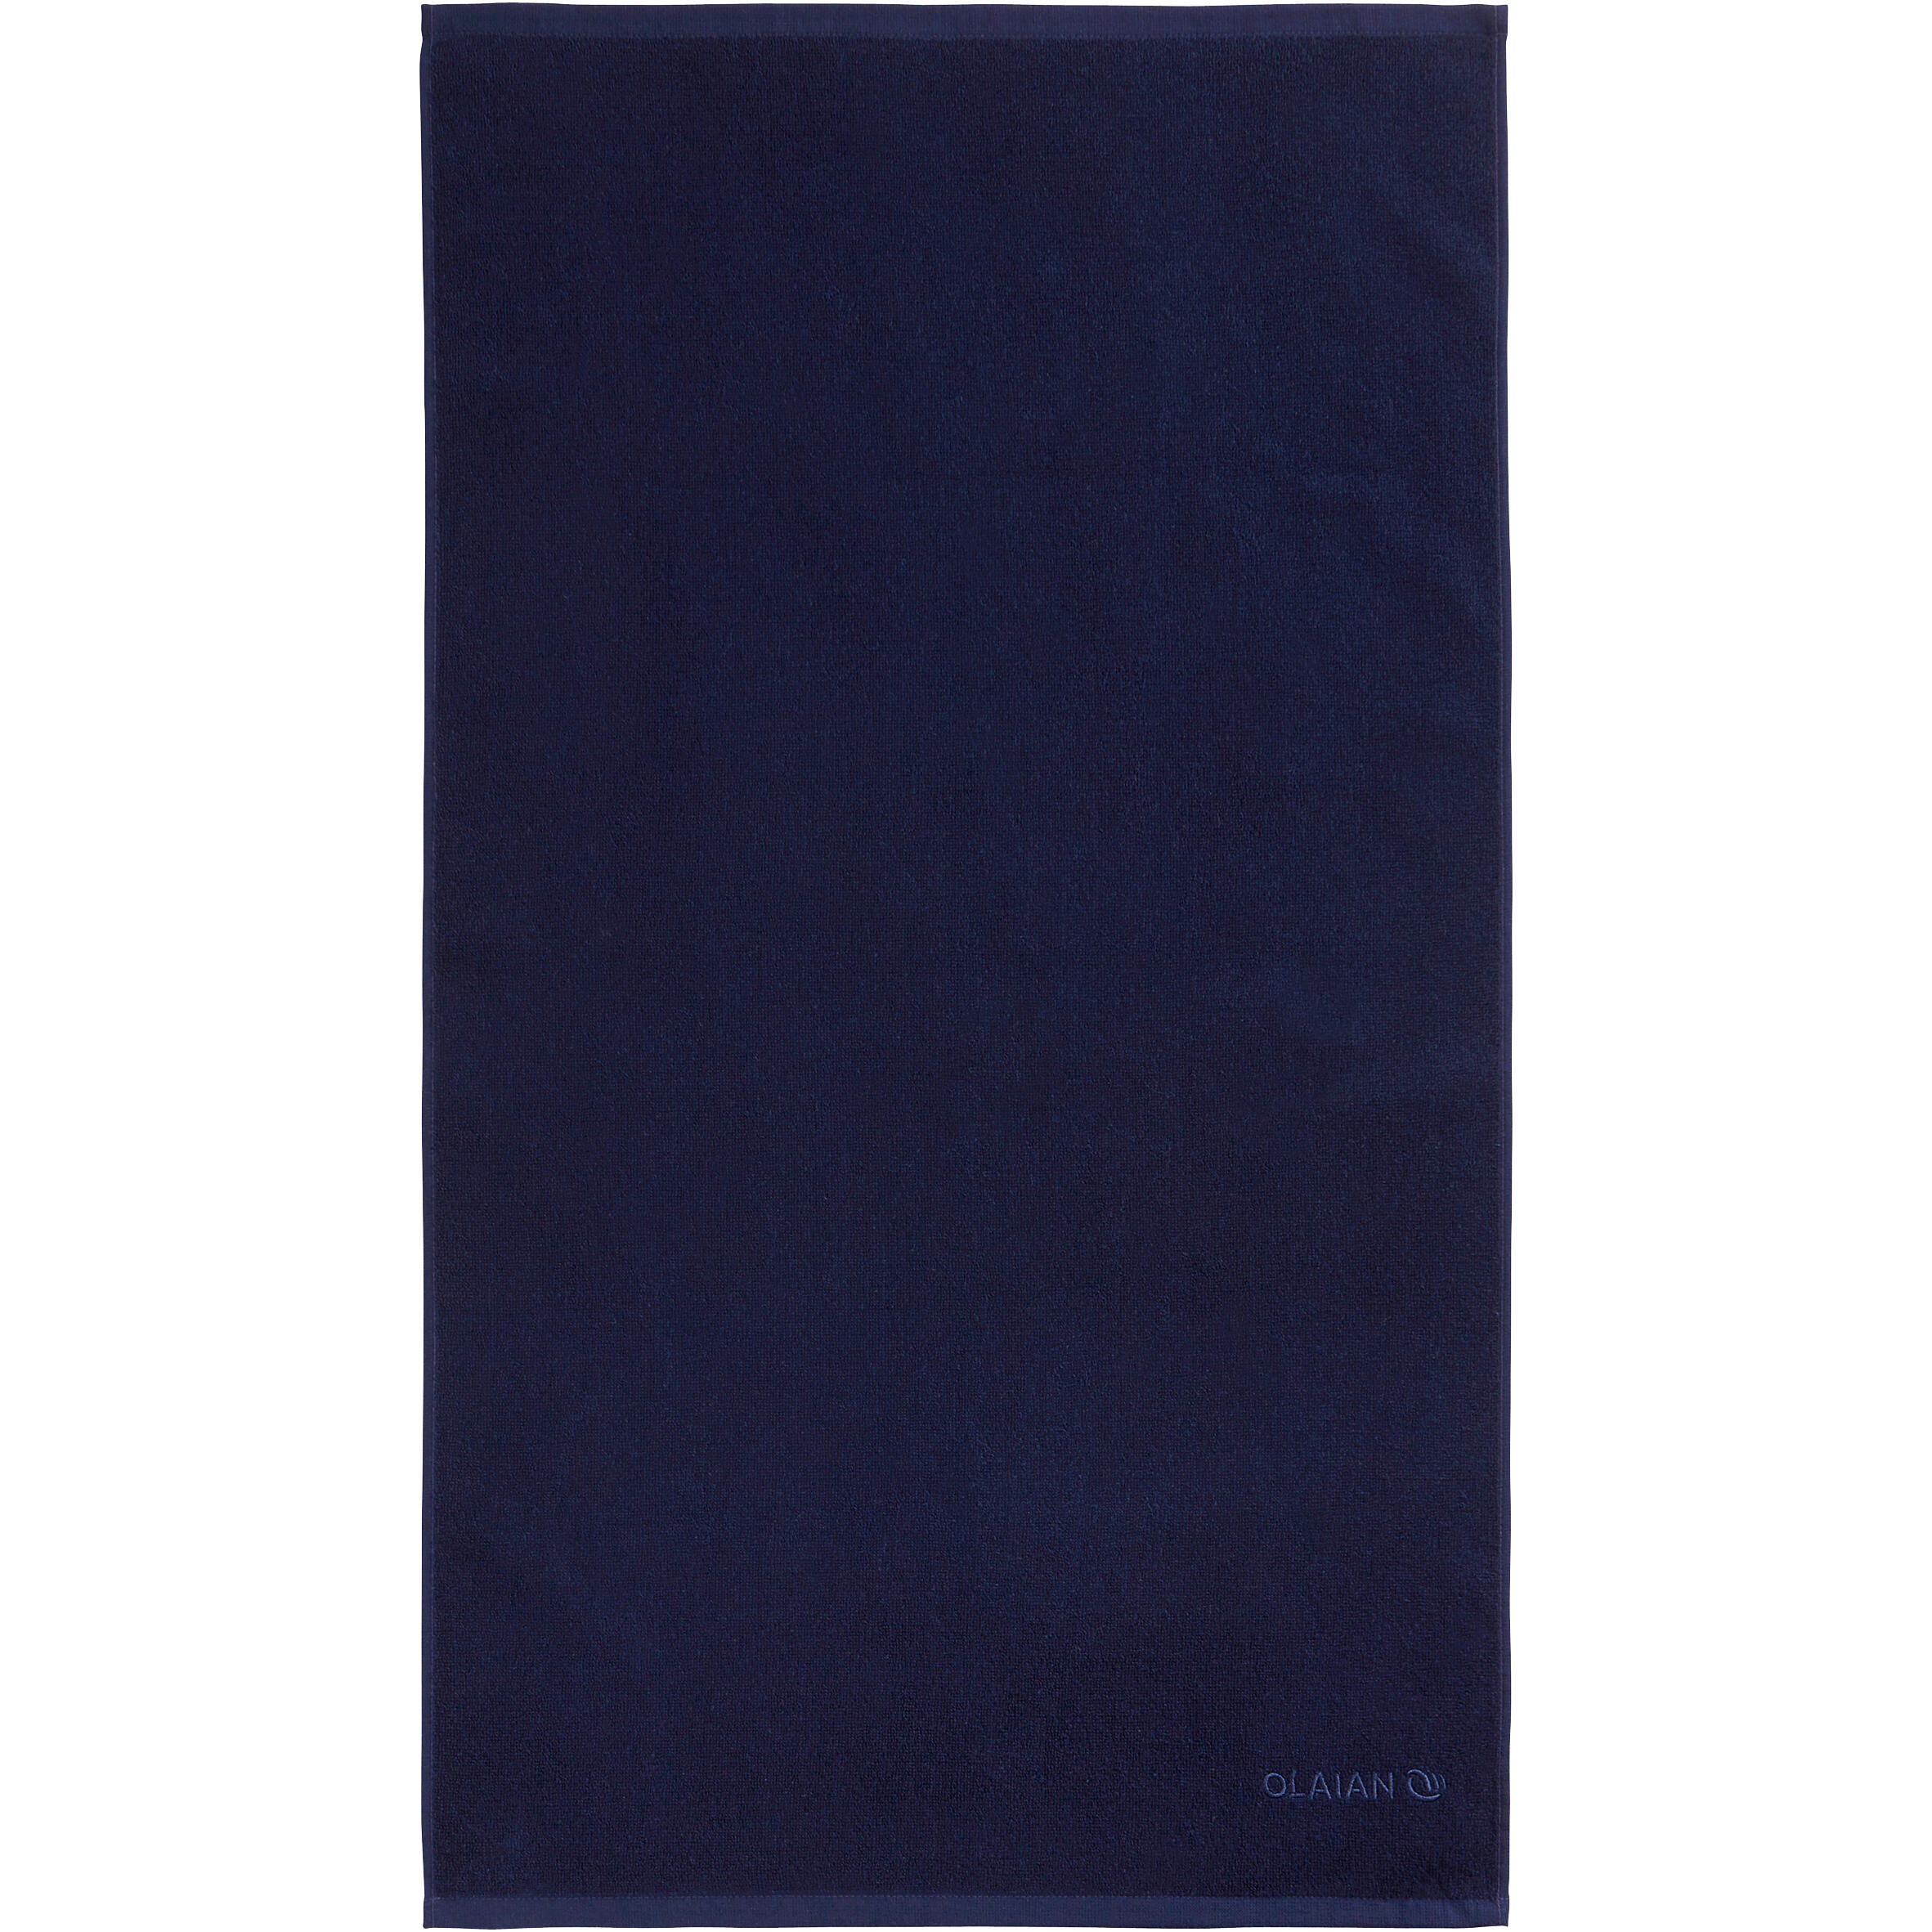 OLAIAN Strandhandtuch S 90 × 50 cm dunkelblau EINHEITSGRÖSSE